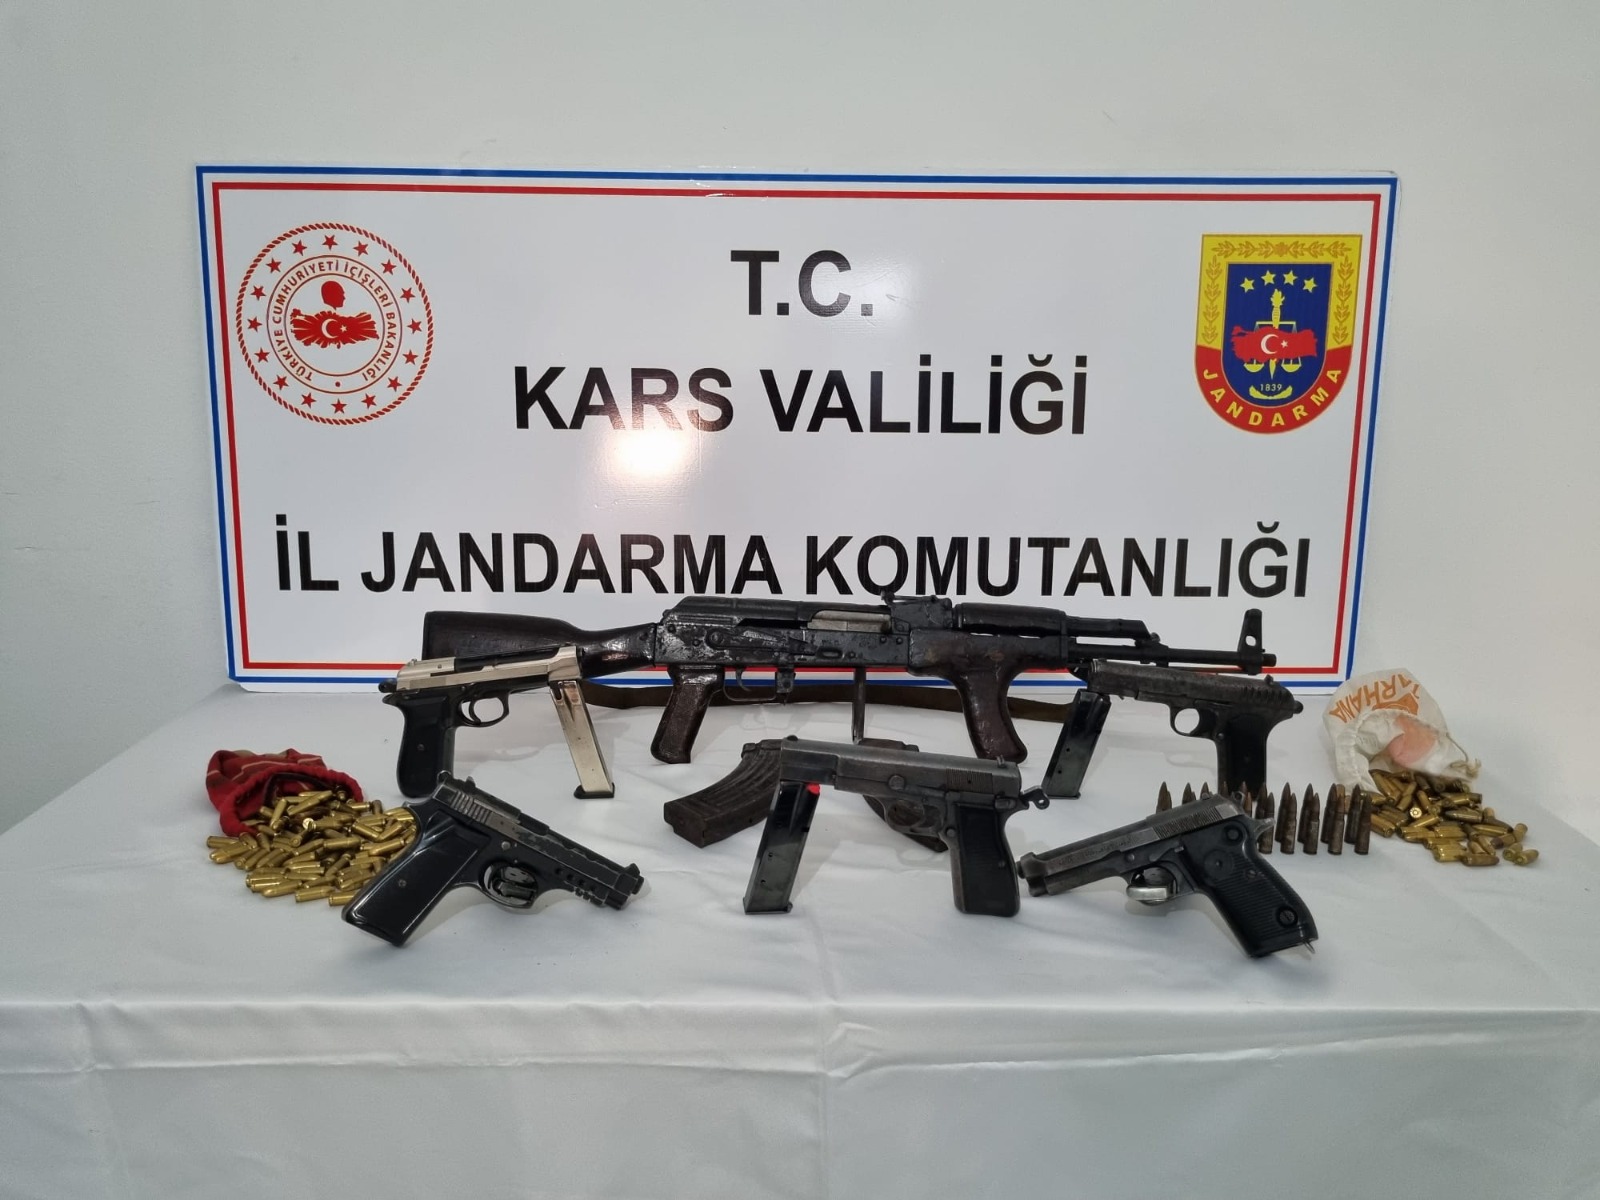 Kars’ta silah kaçakçılığı yaptıkları iddiasıyla 5 kişi gözaltına alındı